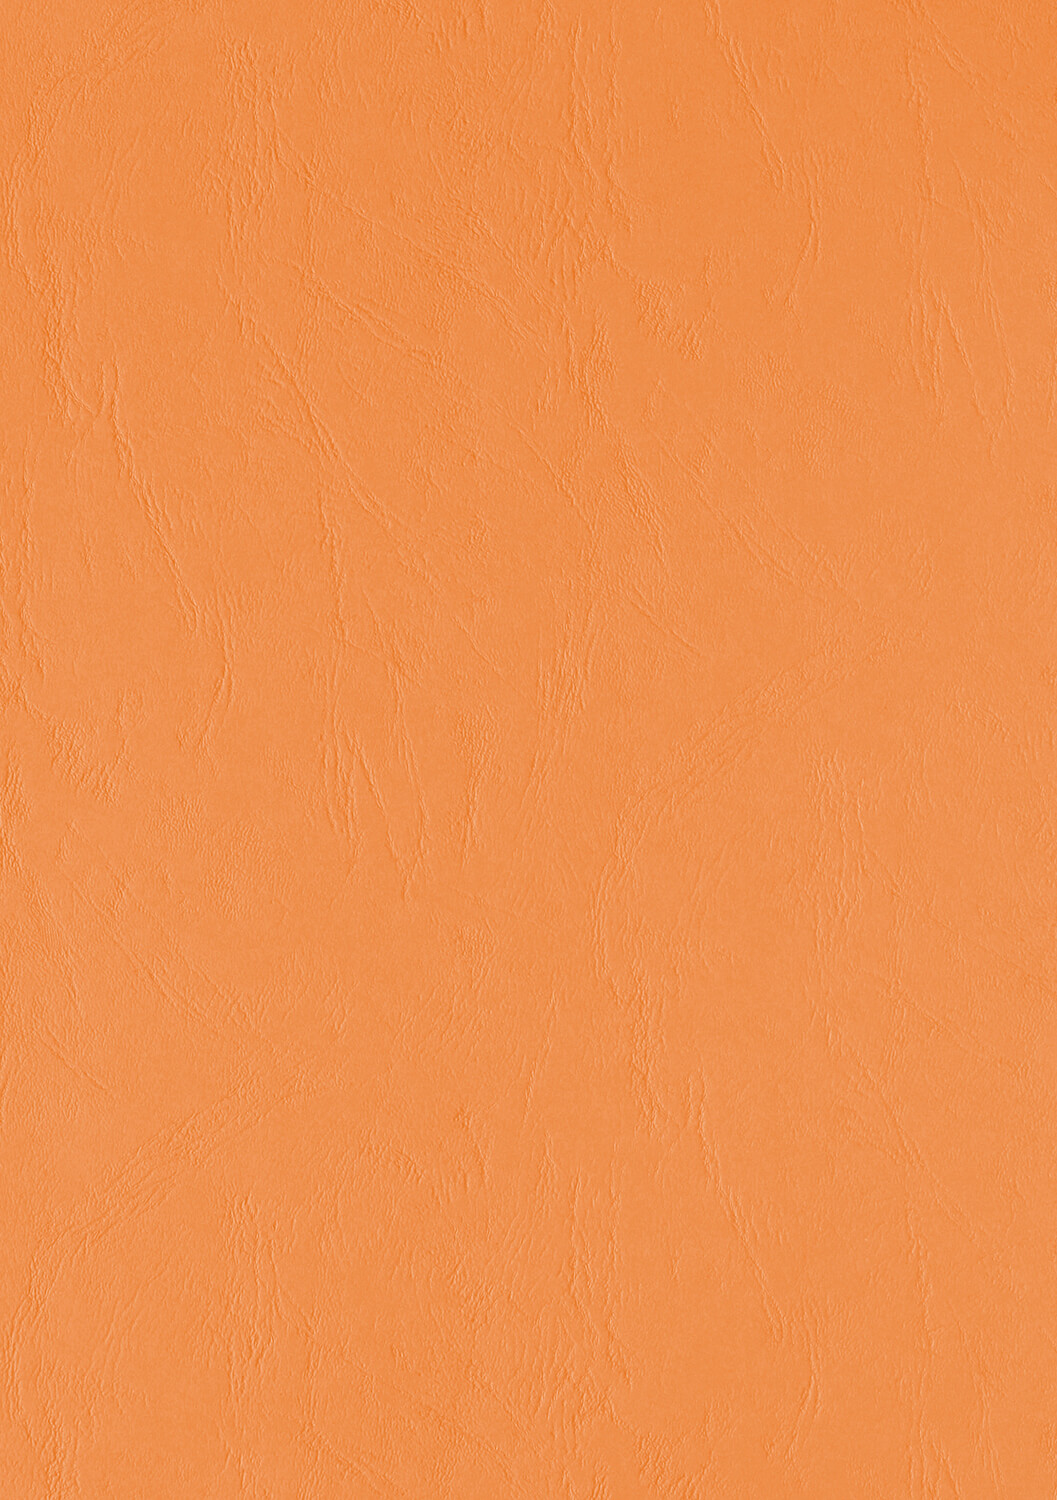 Ledergenarbter Karton DIN A4 300g orange sofort lieferbar | Bestnr. UMBR300-OR